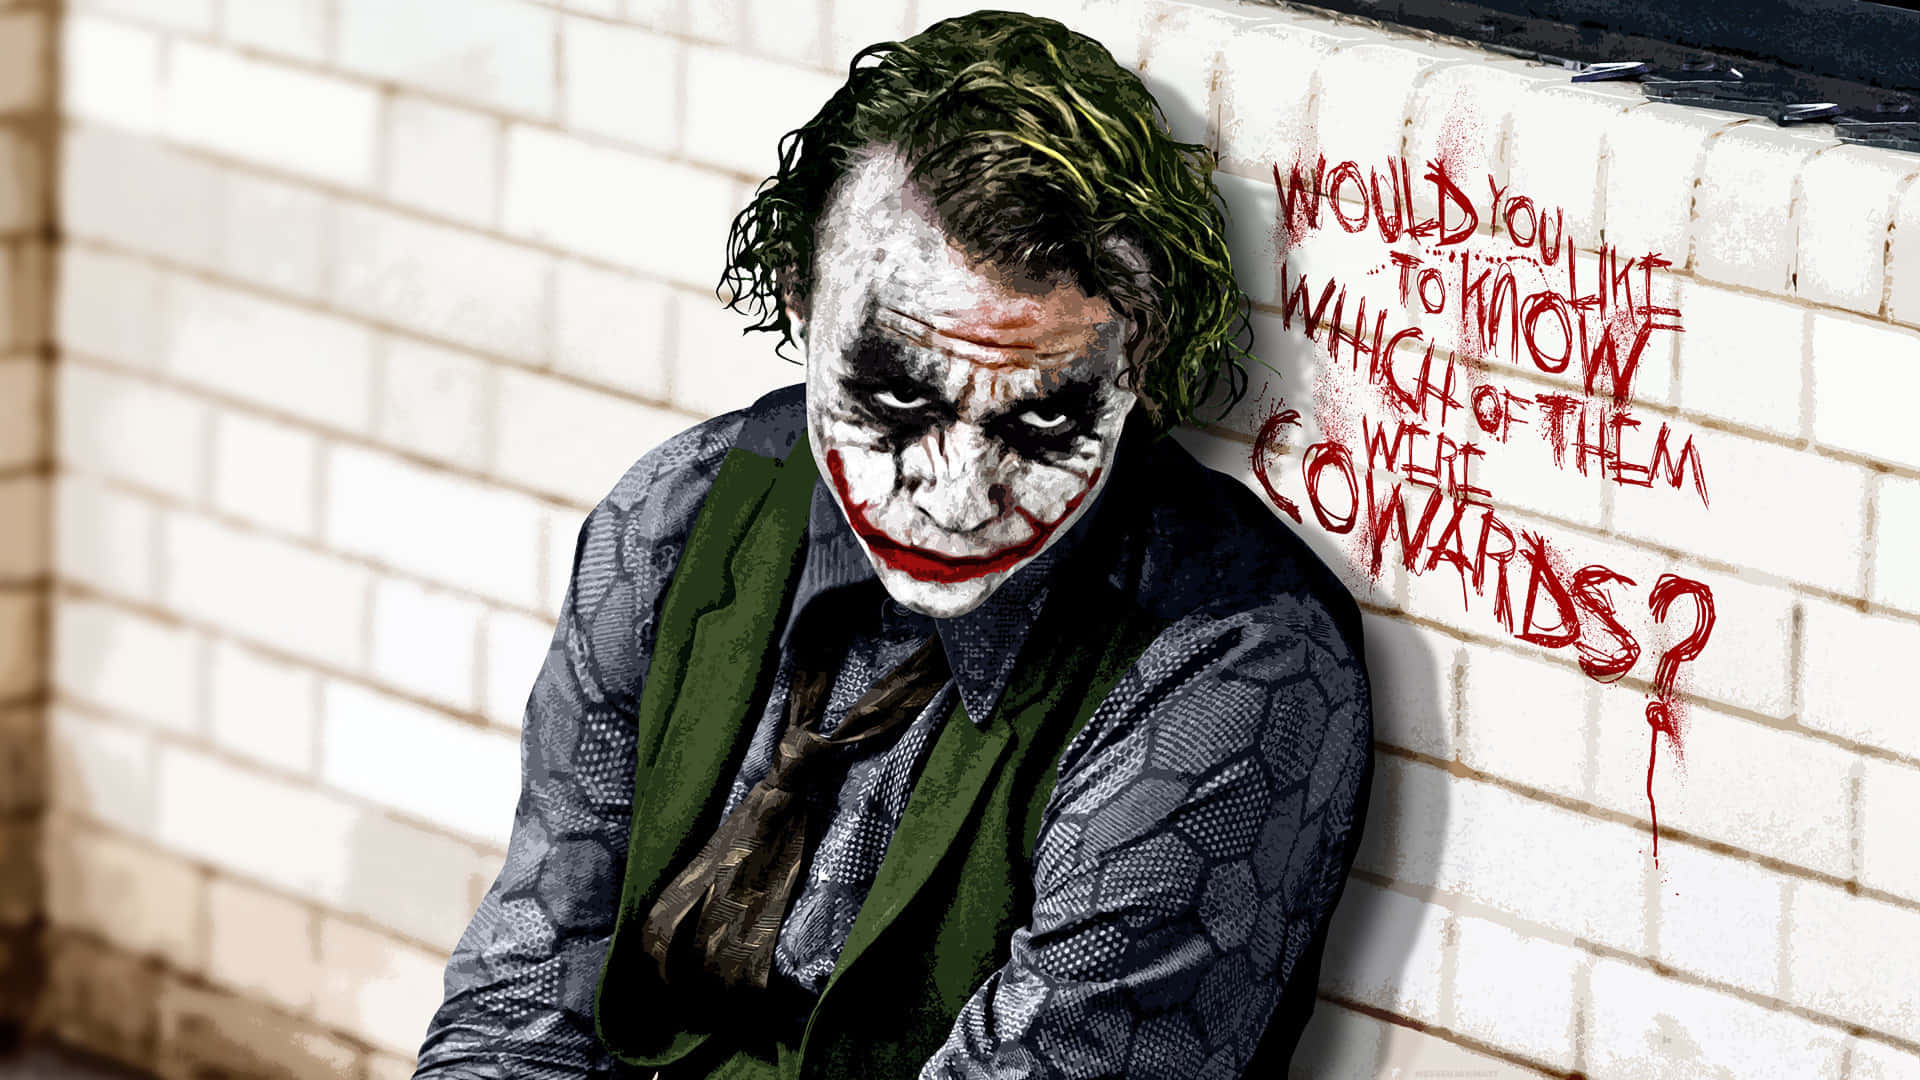 Denikoniska Bilden Av Joker Från Den Prisbelönta Filmen 